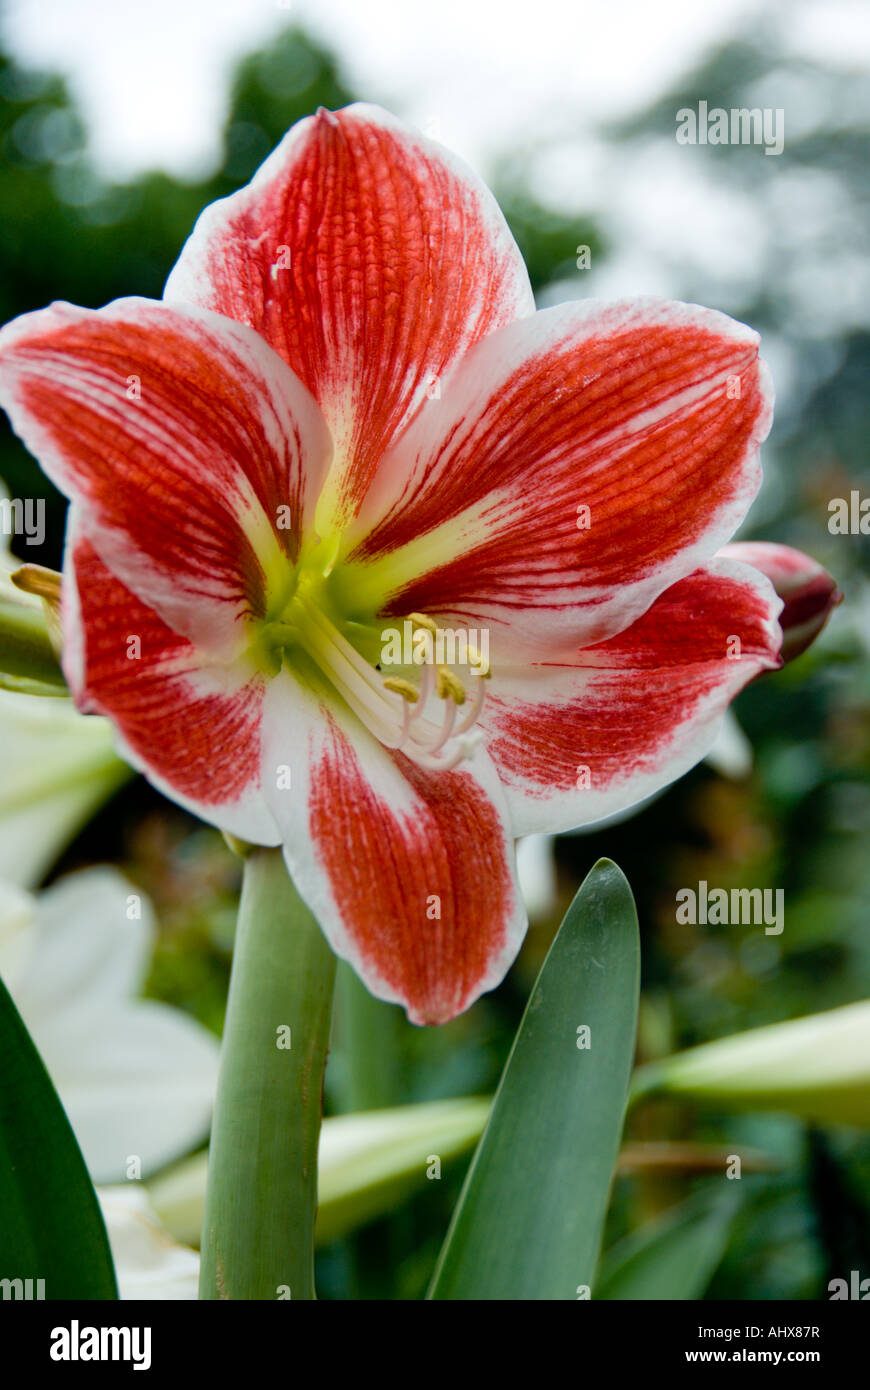 Amaryllis flower close up. Stock Photo